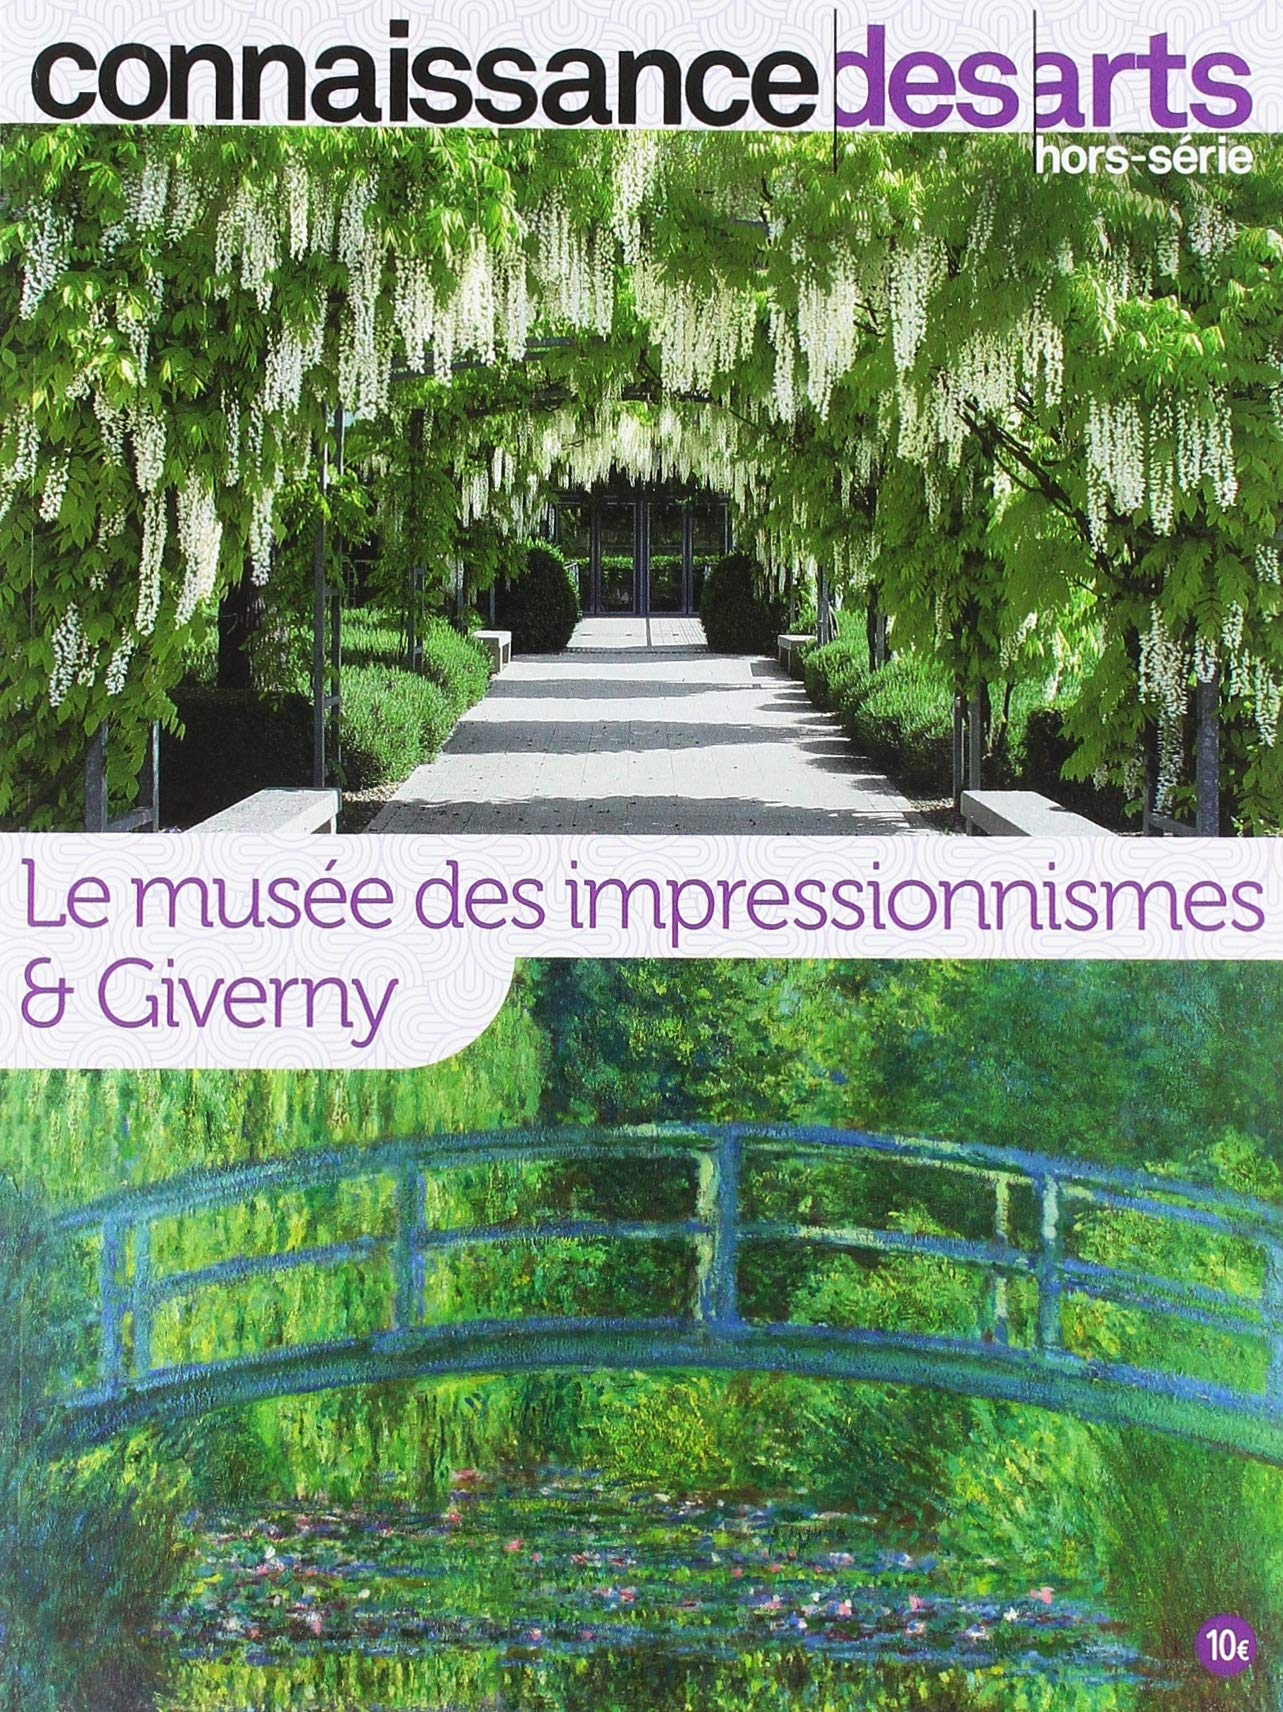 Le musée des impressionnismes & Giverny